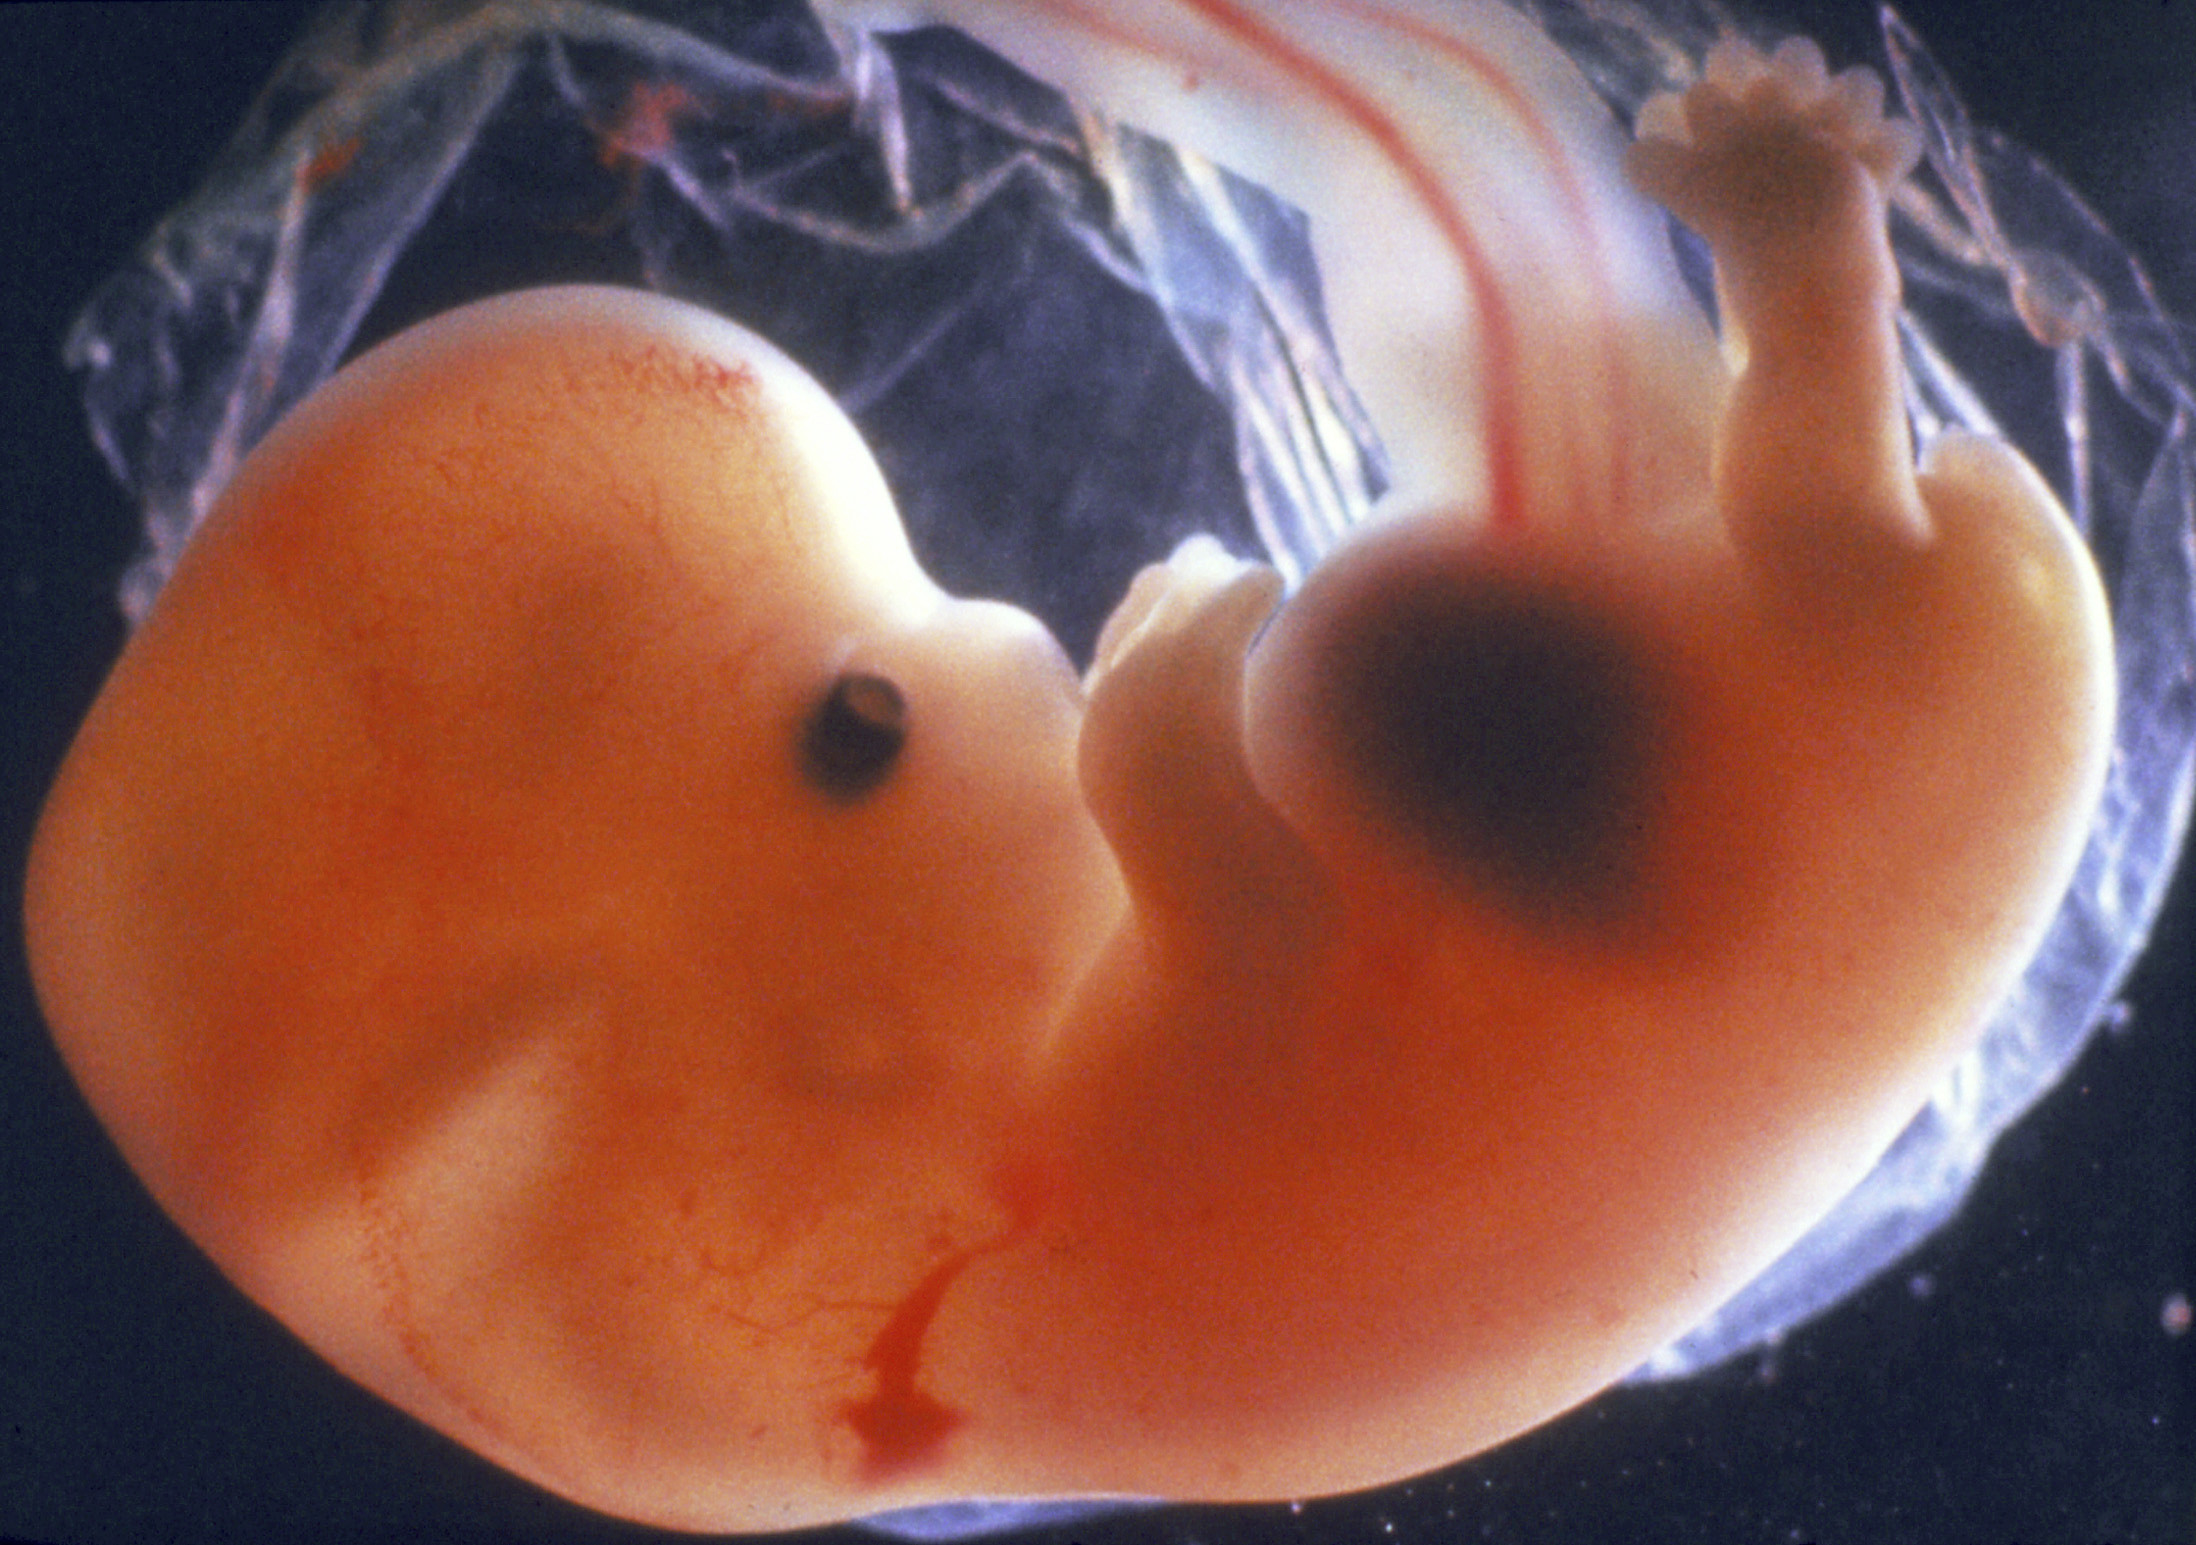 Что происходит на 8 неделе. Эмбрион на 6 неделе беременности. Эмбрион на 7 неделе беременности. 5 6 Недель беременности фото эмбриона. Беременность 6 недель фото эмбриона.